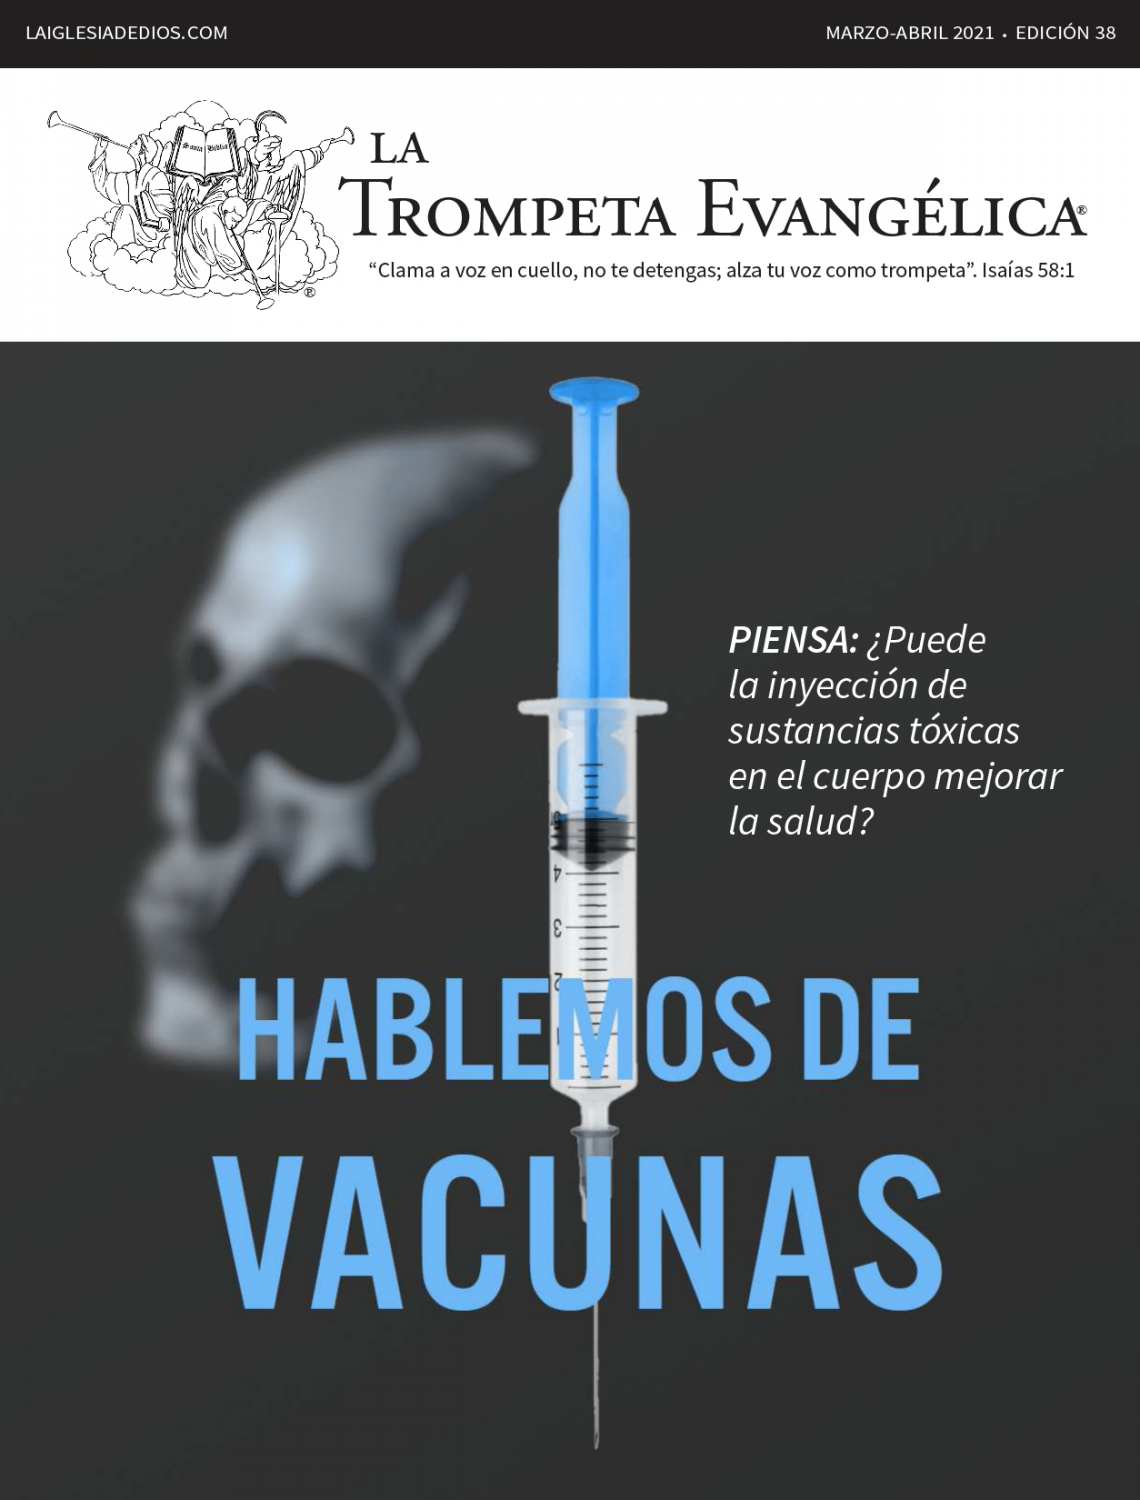 Hablemos de vacunas-SpanishTrumpet-1